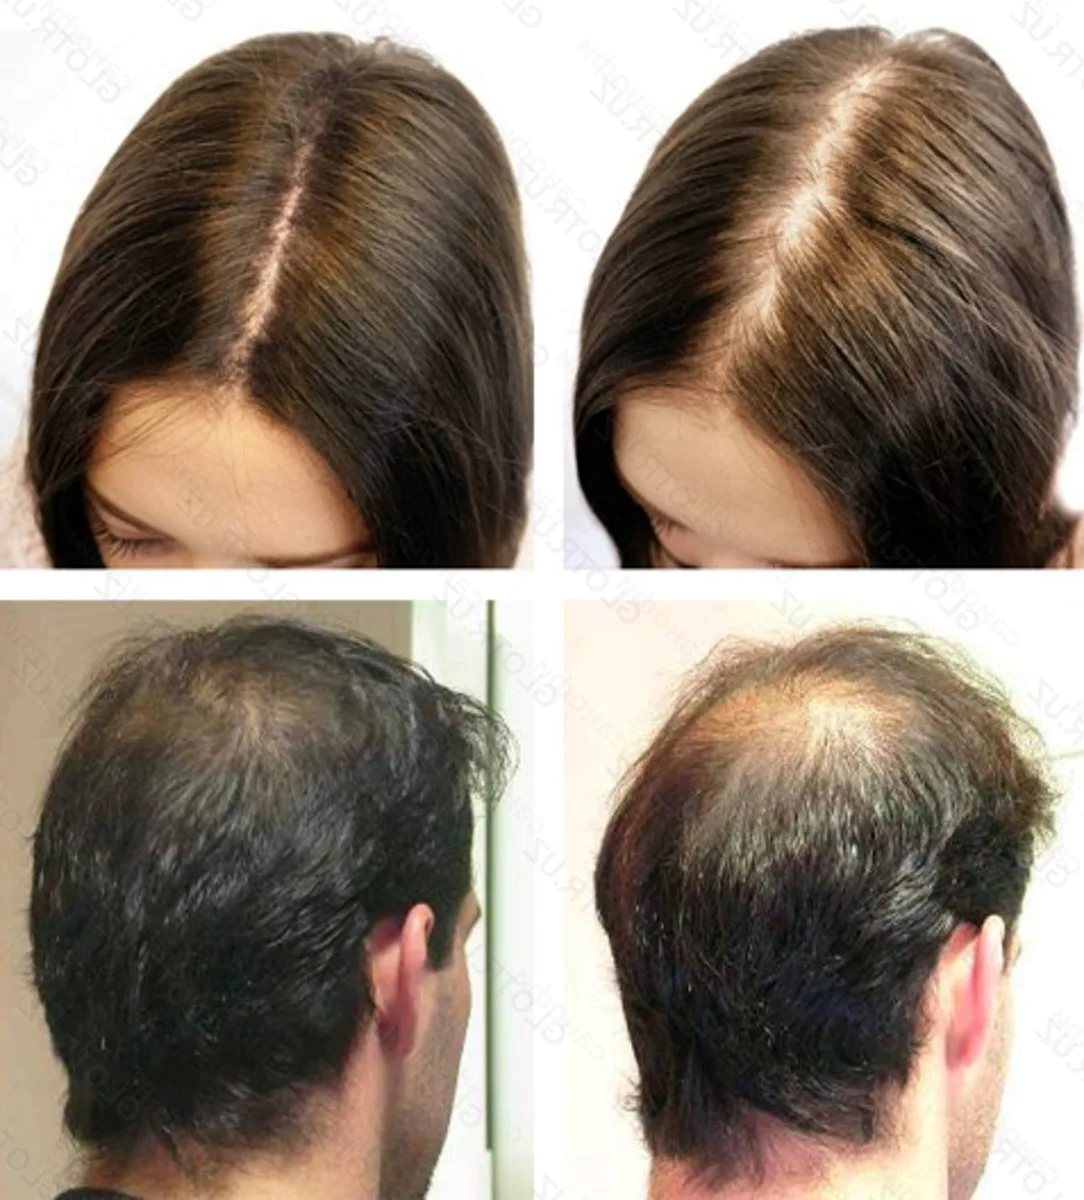 Сильные волосы отзывы. Андрогенная алопеция миноксидил. Андрогенная алопеция Гамильтон. Андрогенная алопеция трихоскопия. Мезотерапия волос до и после.